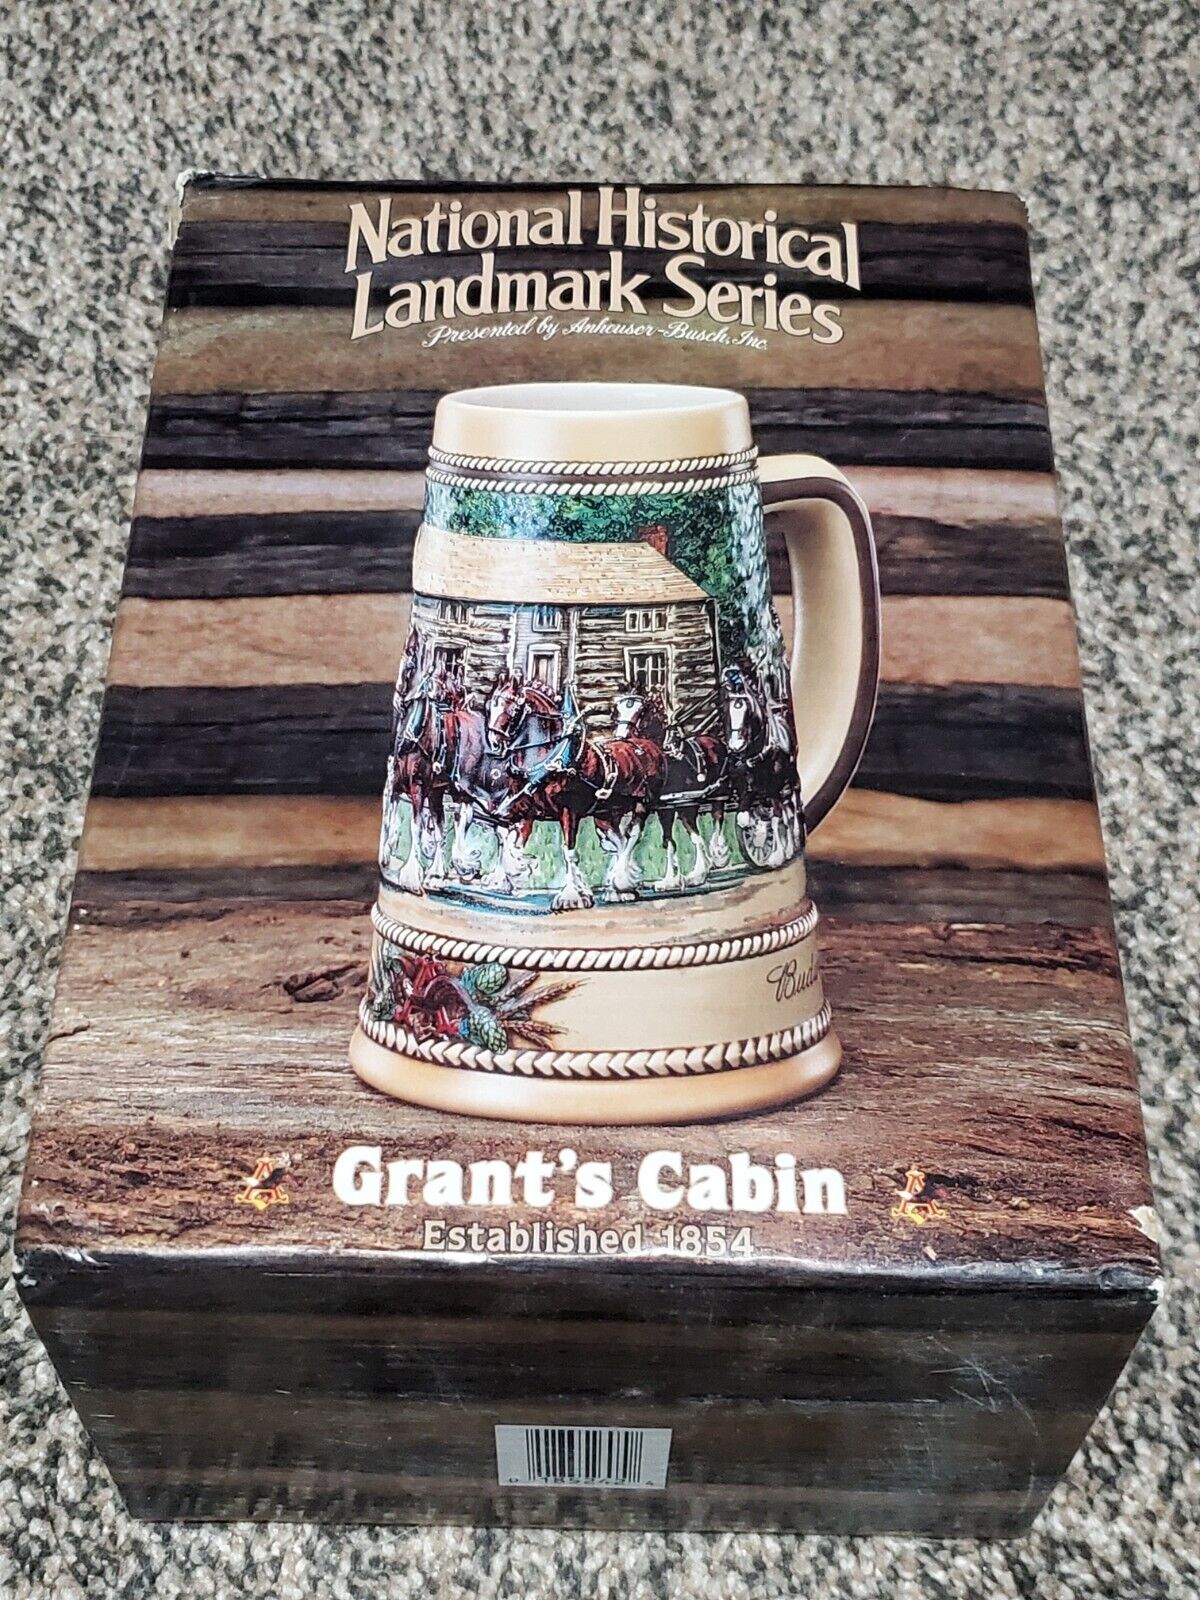 1988 Budweiser National Historic Landmarks Series Grant's Cabin Beer Mug Stein